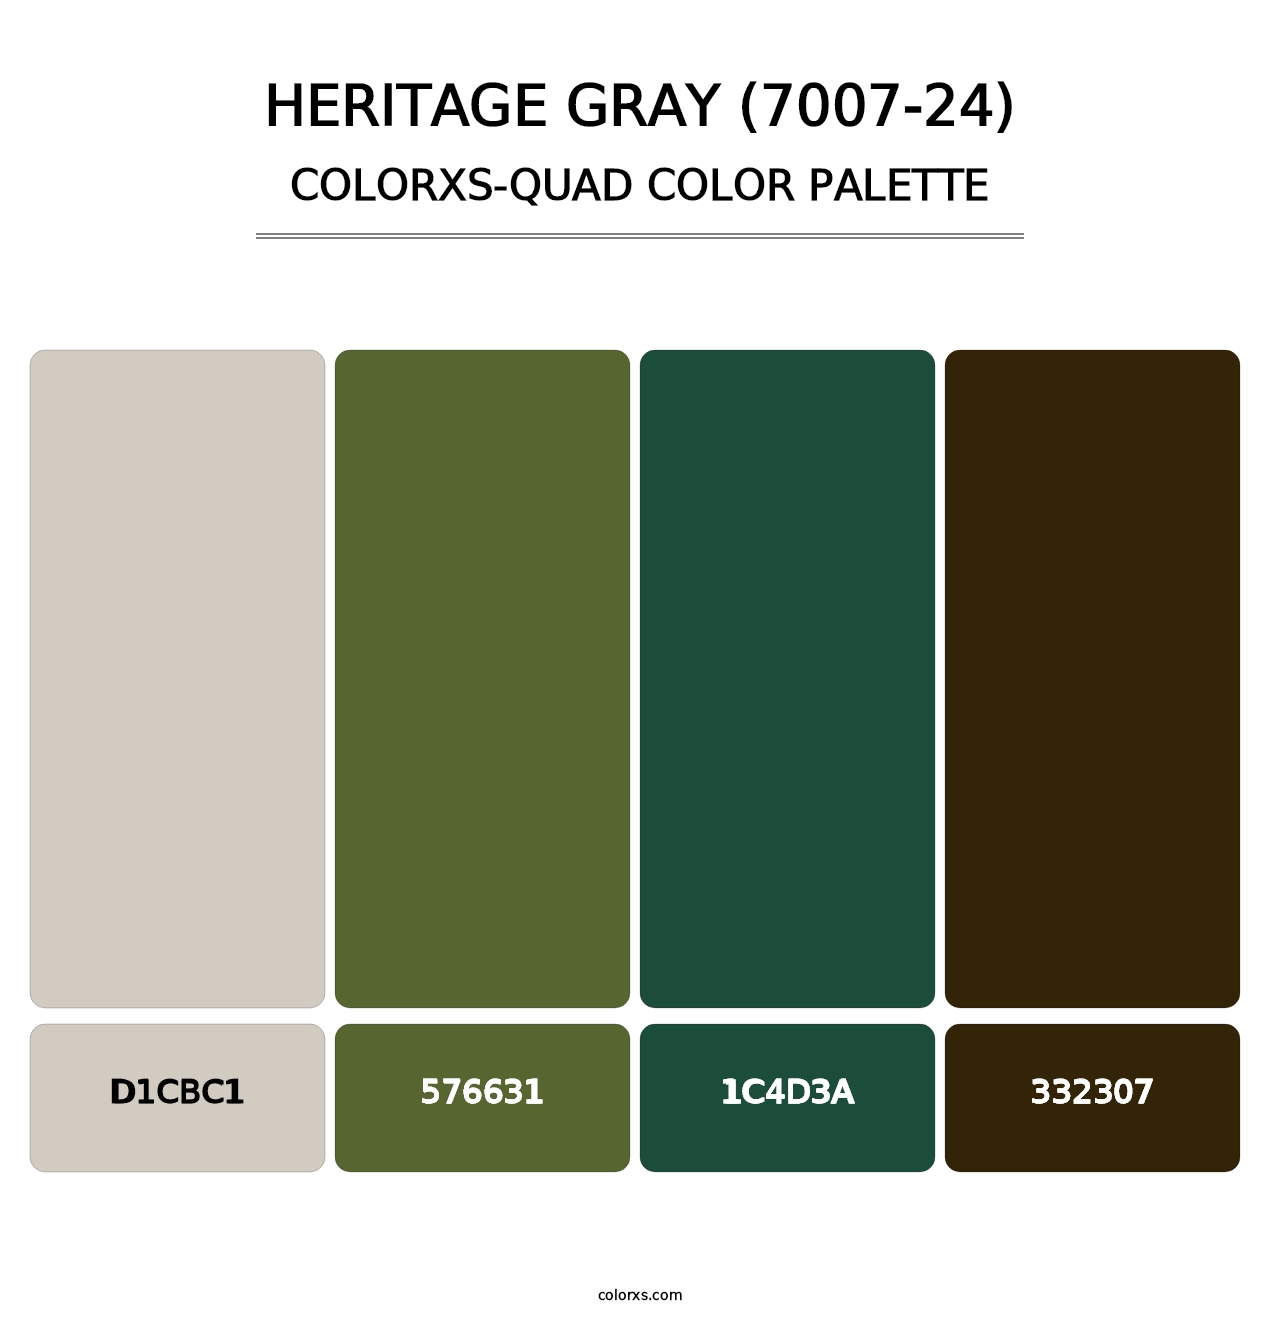 Heritage Gray (7007-24) - Colorxs Quad Palette